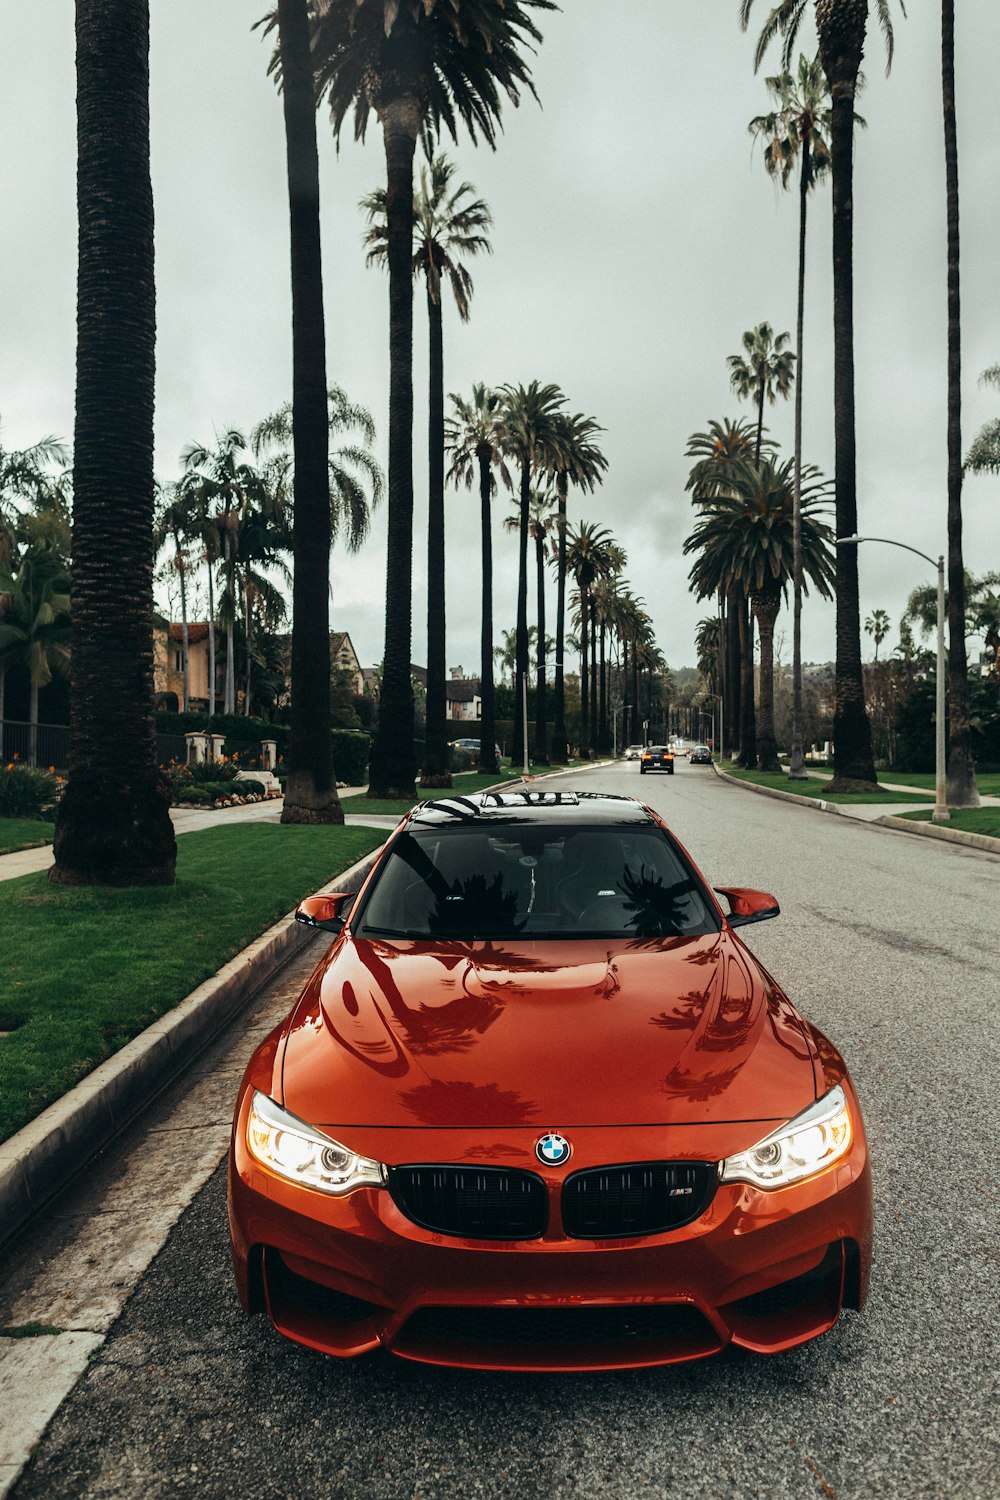 BMW coupé rojo aparcado en la carretera